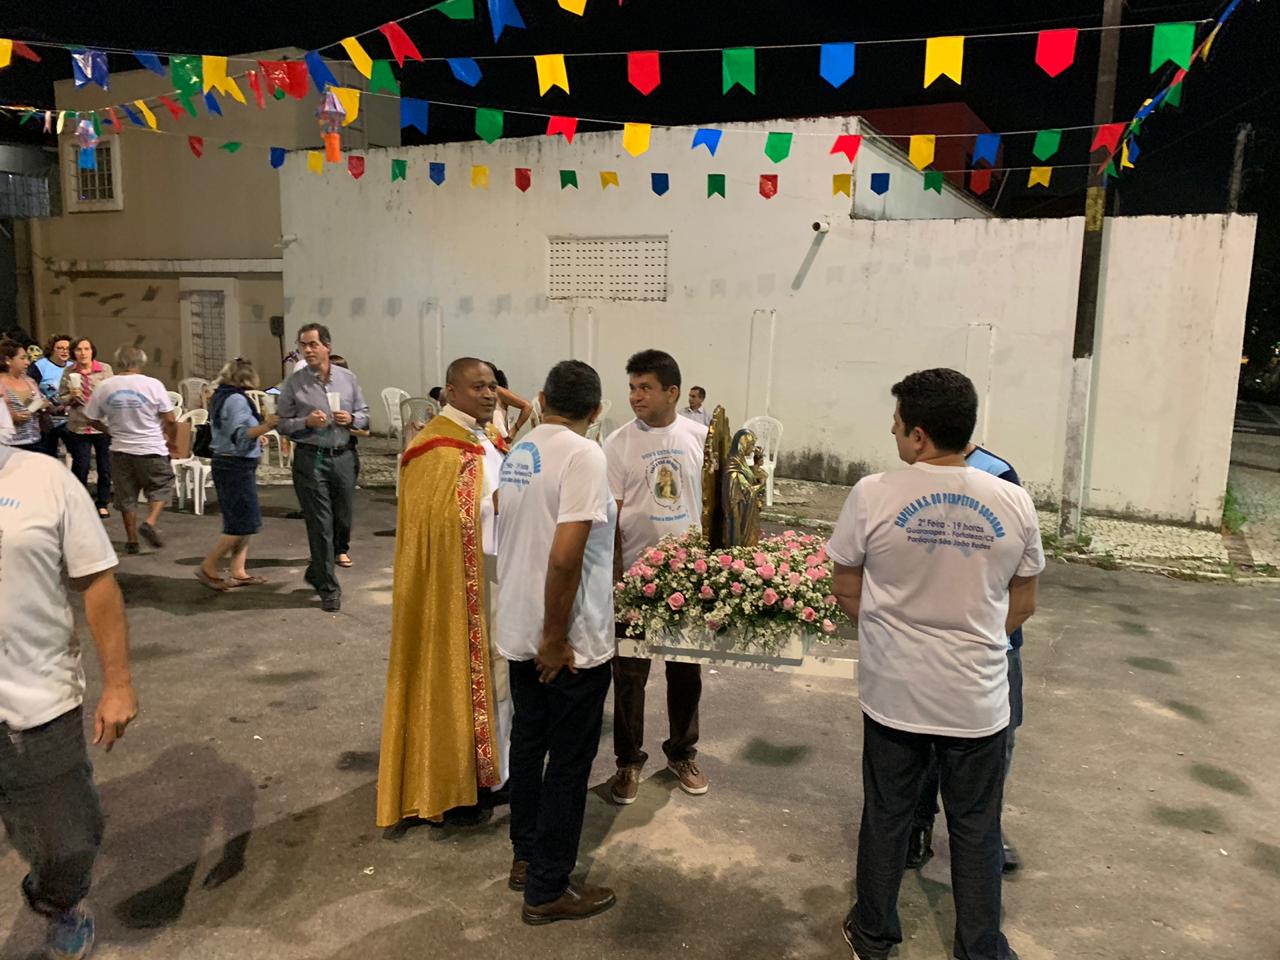 Procesión y misa en honor a Nuestra Señora del Perpetuo Socorro en Fortaleza Brasil